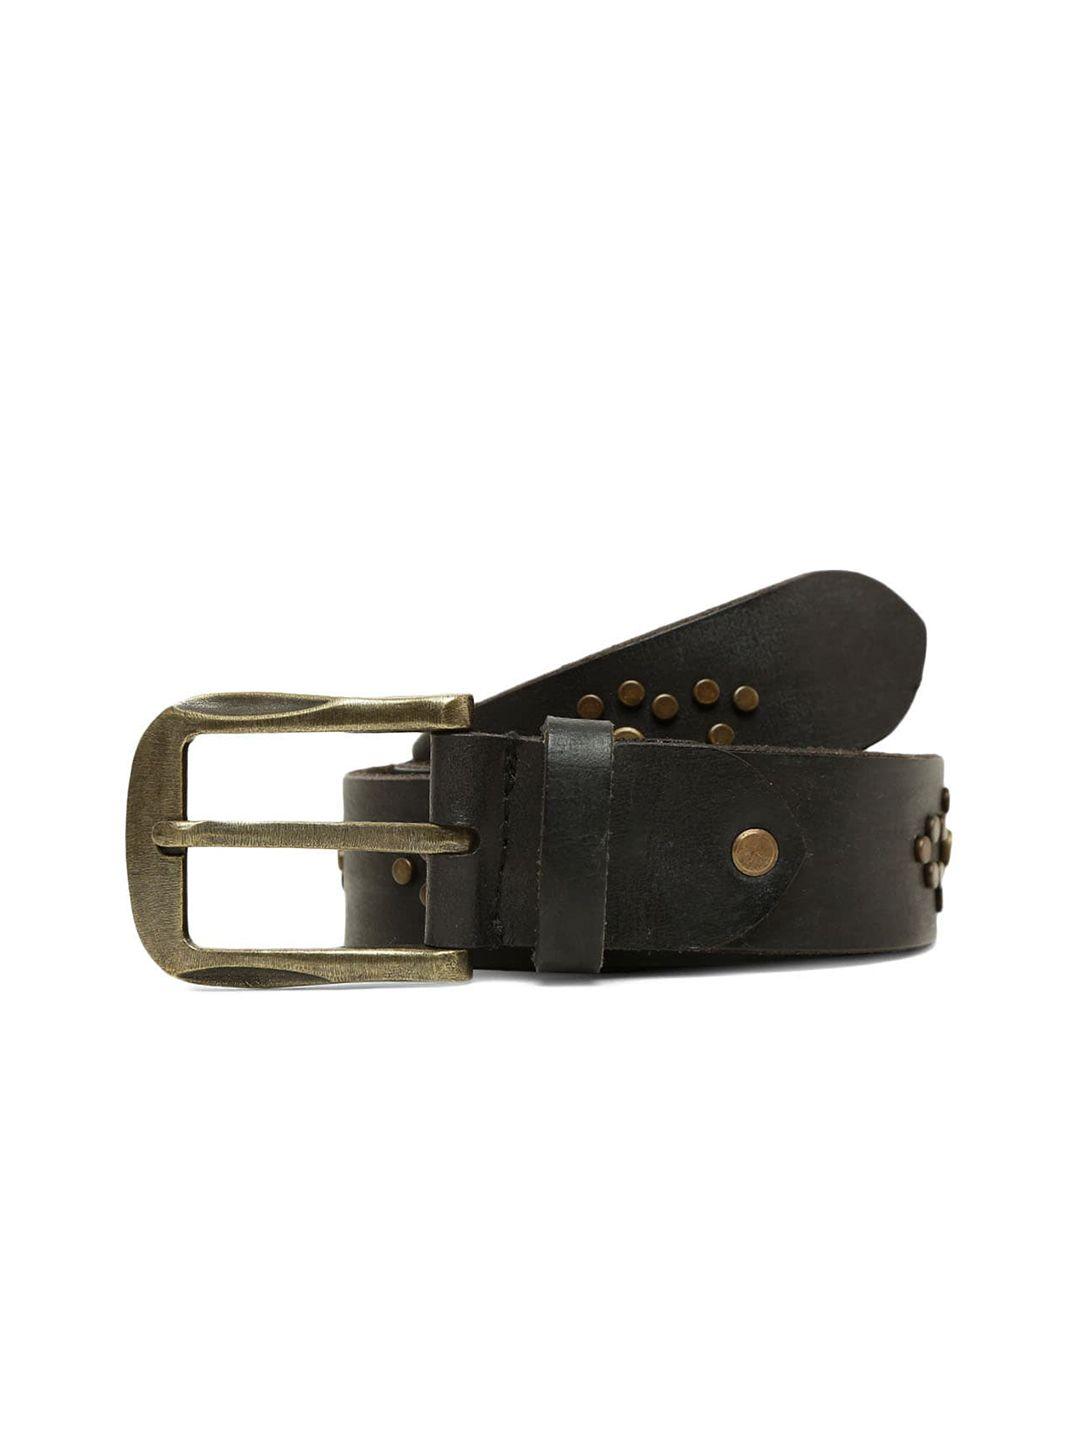 art n vintage men embellished leather belt